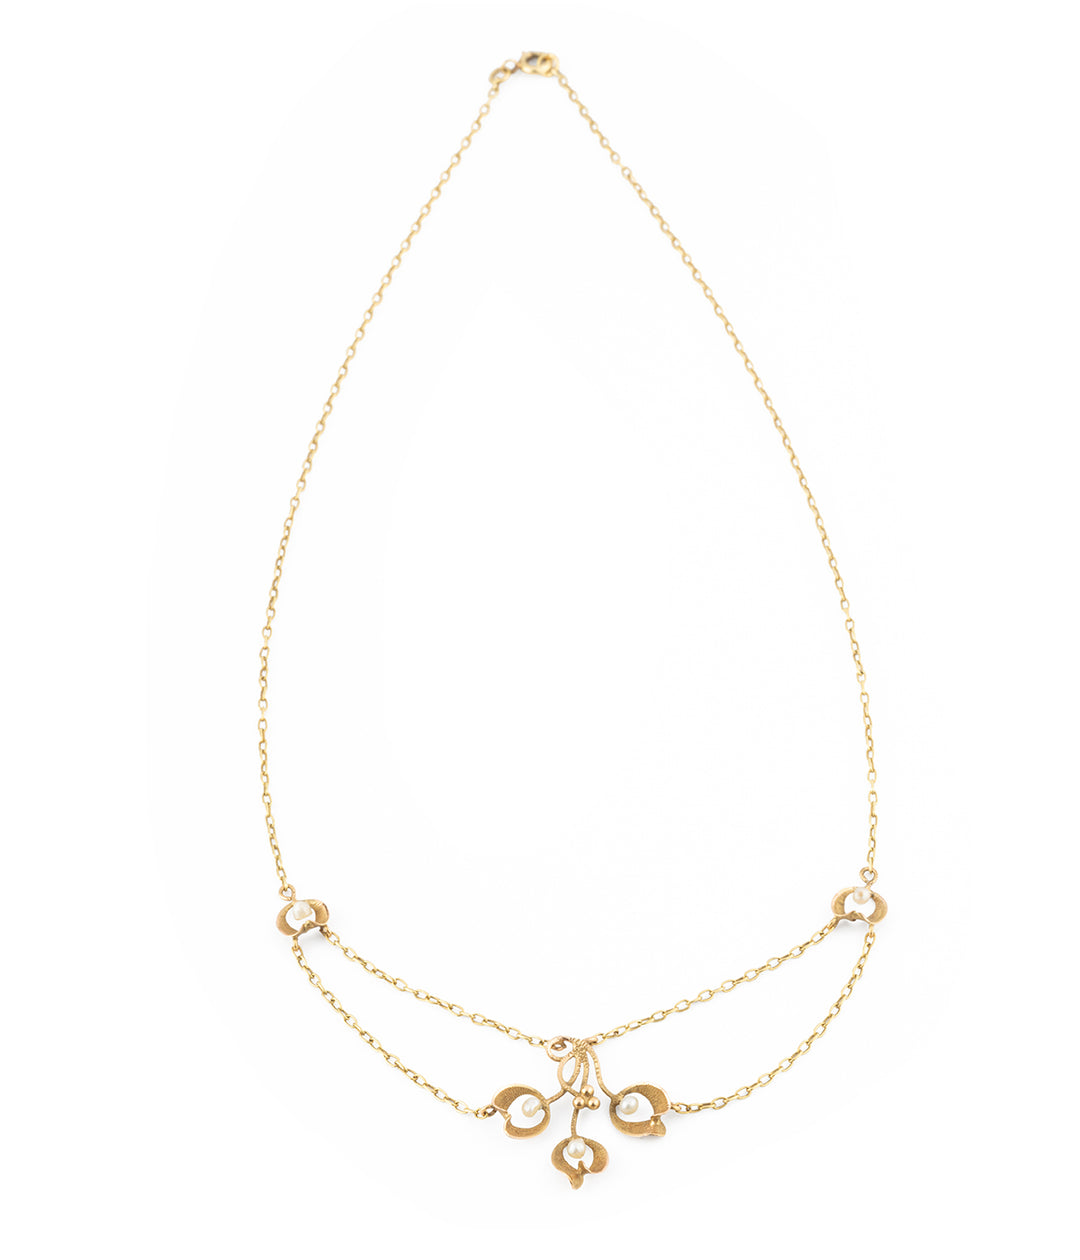 Collier Art nouveau en or et perles "Kara" - Caillou Paris